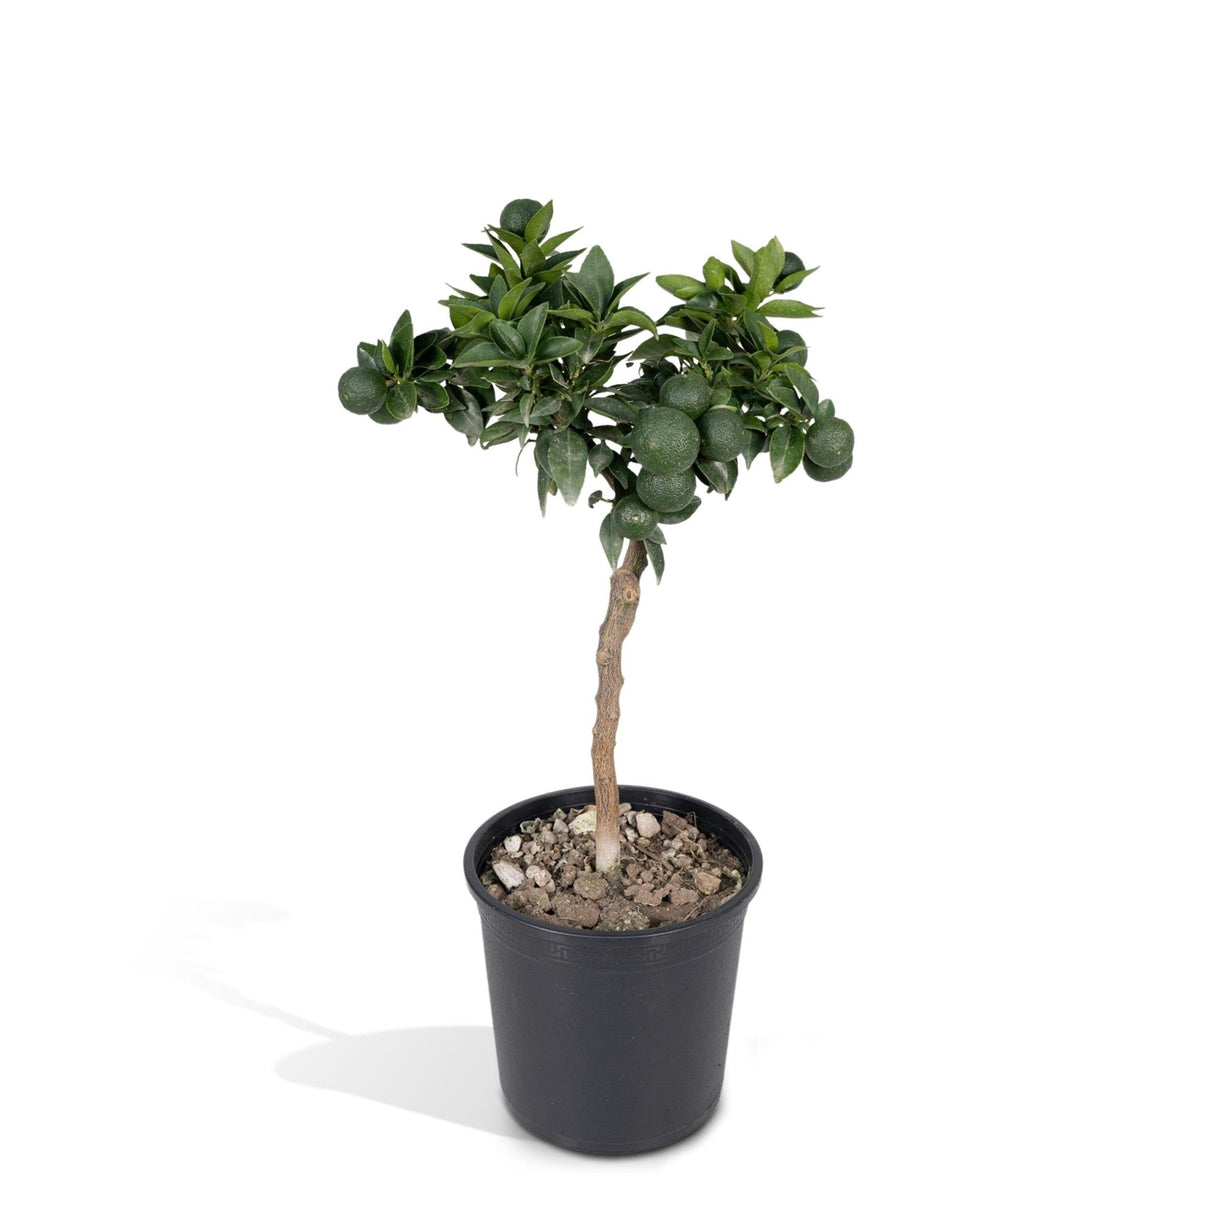 Livraison plante - Mandarinier - 45 cm - Ø15 - Arbuste fruitier - Plante d'extérieur